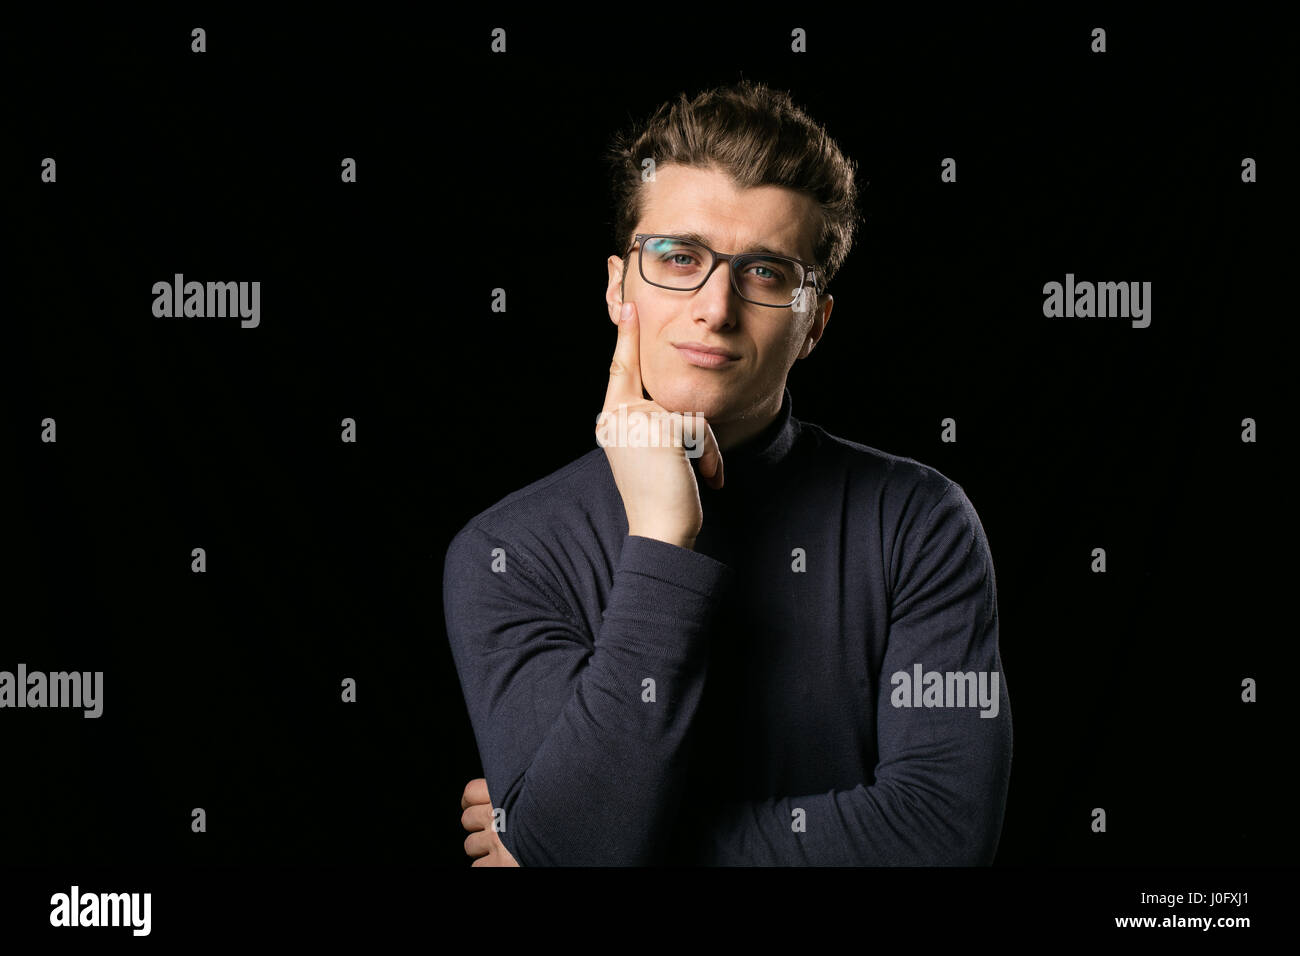 Smart uomo con eleganti occhiali e collo camicetta su sfondo nero Foto Stock